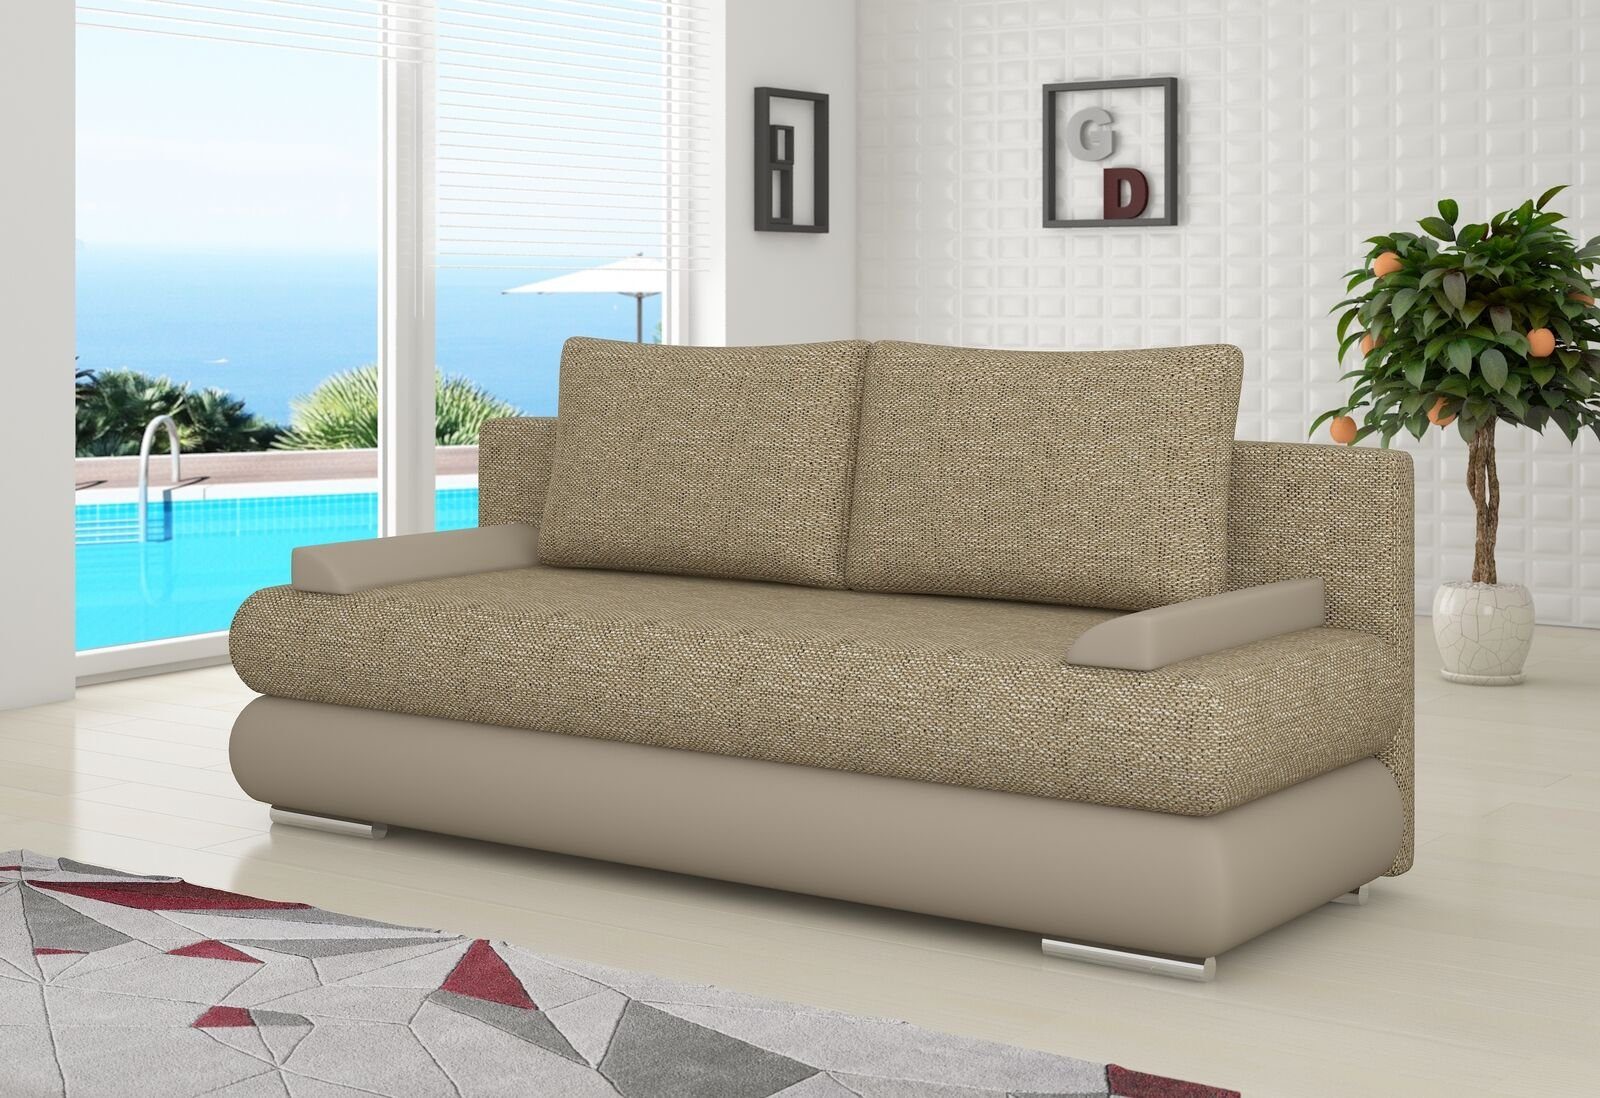 JVmoebel Beige 3 Sitzer Schlafsofa Polster Gästezimmer Stoff Couch Couch Sofa, Design